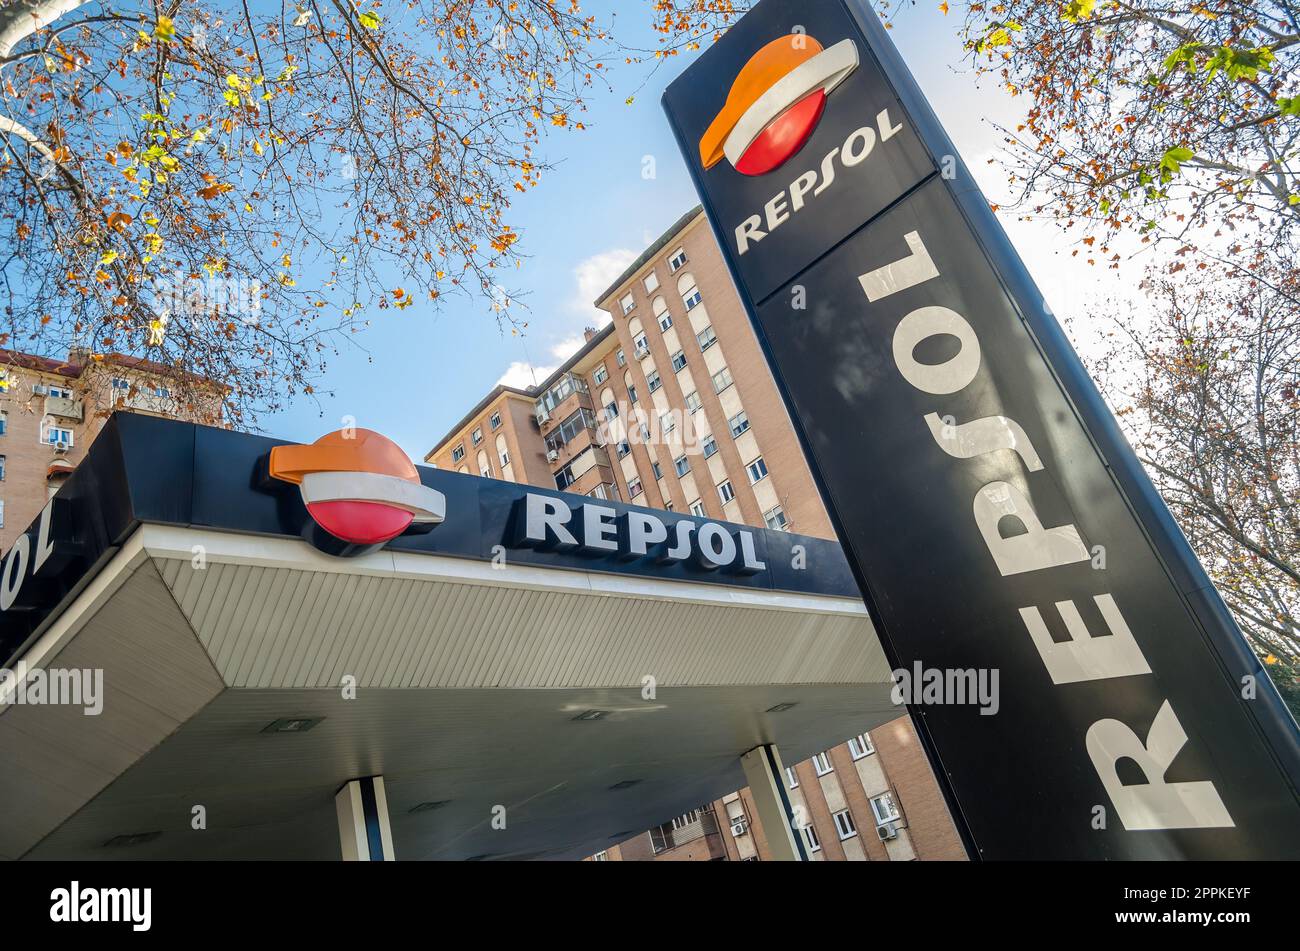 MADRID, SPANIEN - 27. DEZEMBER 2021: Repsol Tankstelle in Madrid, Spanien, Repsol ist ein spanisches multinationales Energie- und Petrochemieunternehmen mit Hauptsitz in Madrid, das 1987 gegründet wurde Stockfoto